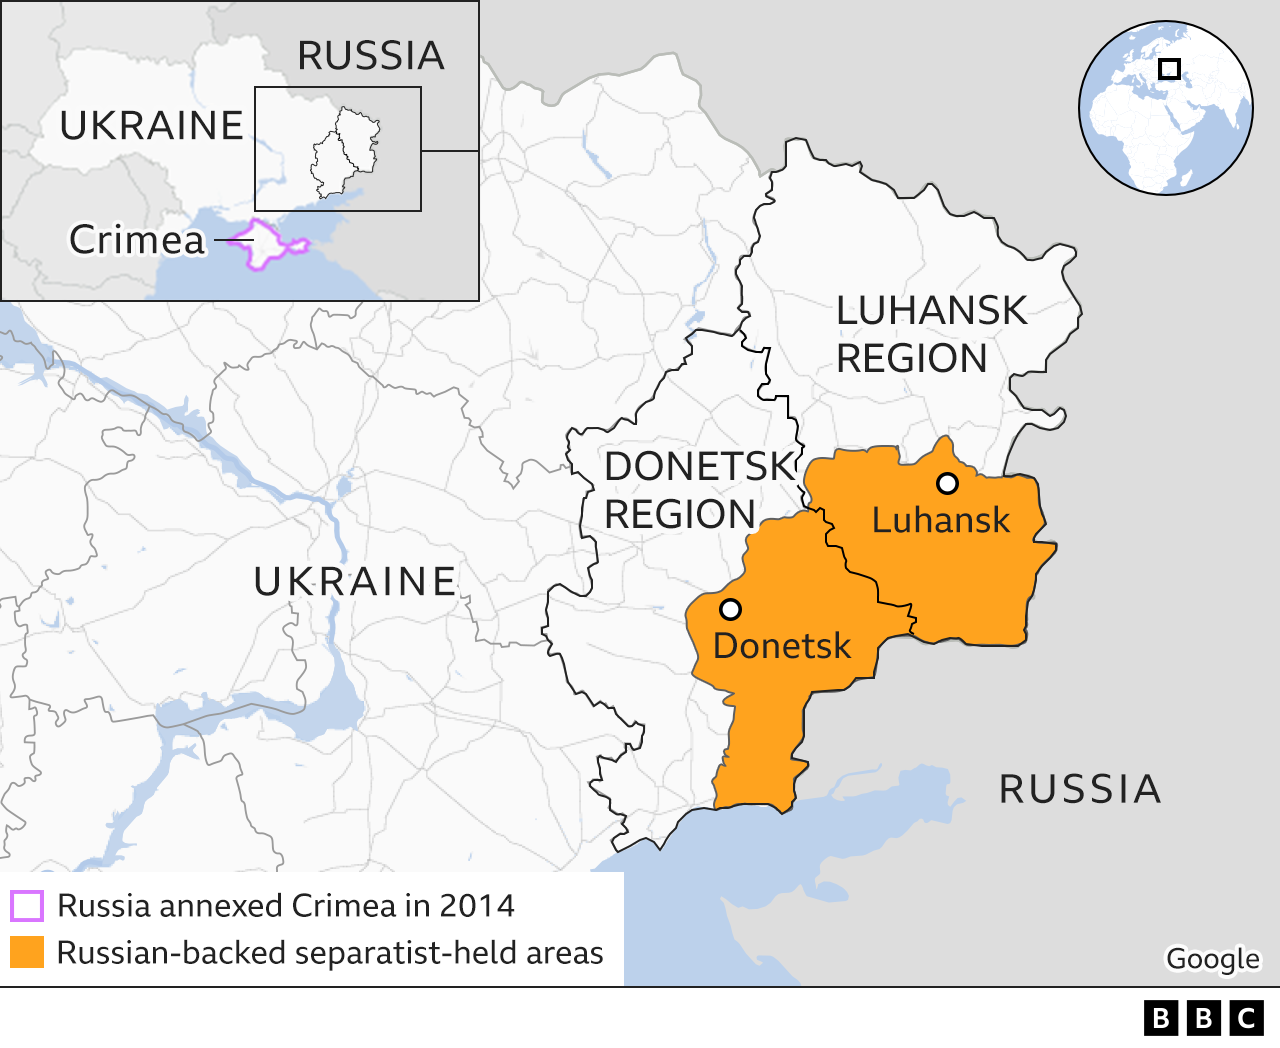 Map showing separatist areas in Eastern Ukraine